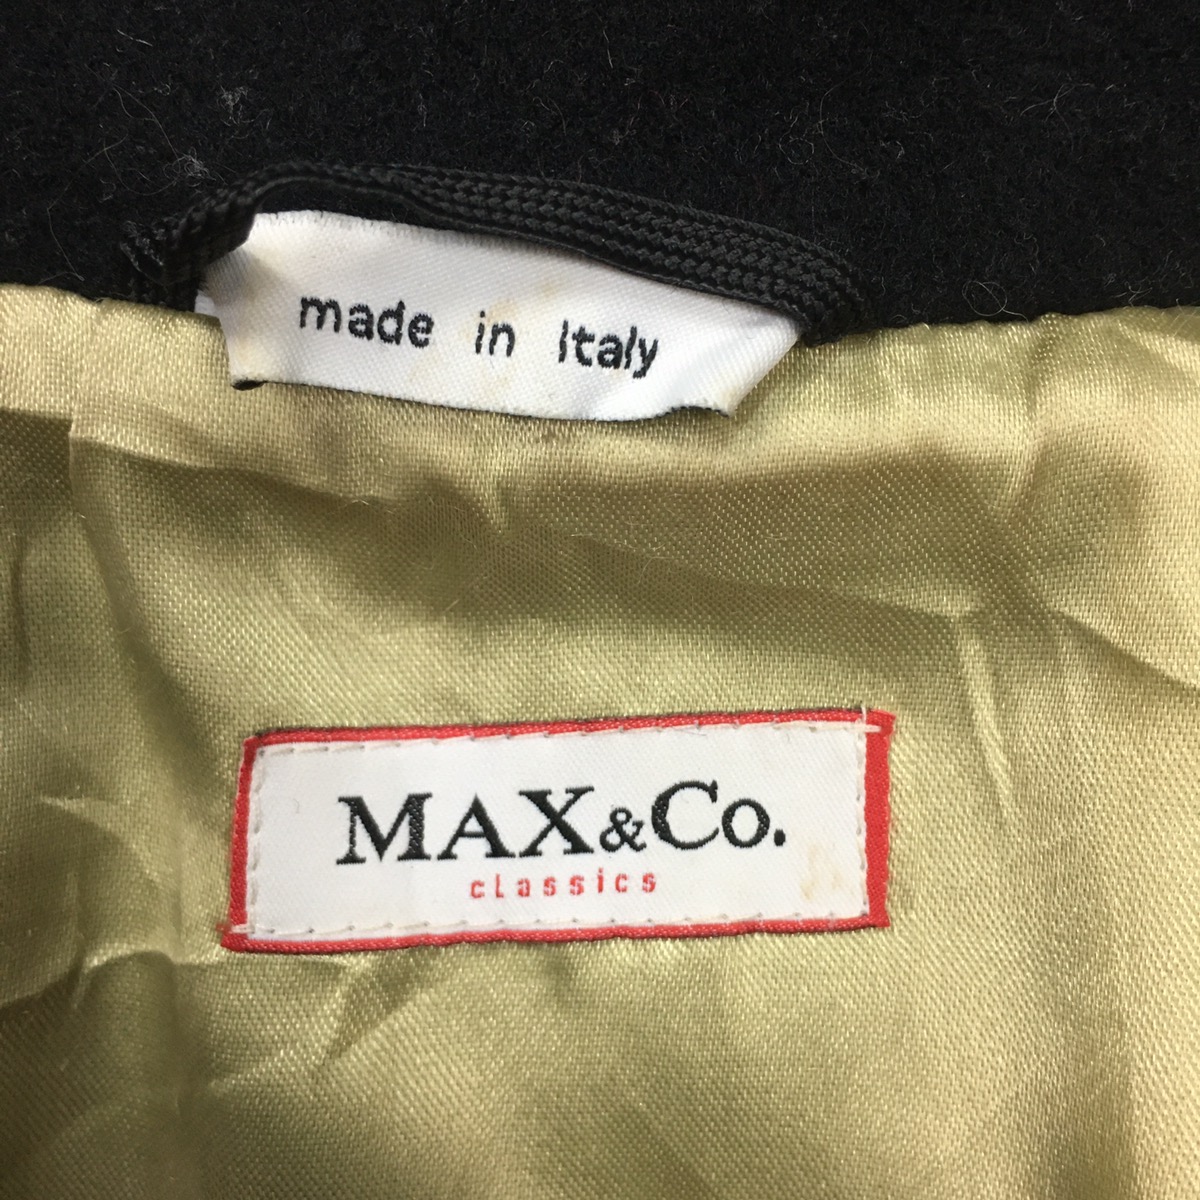 MAX MARA & Co. Double Breasted Parka Long Coat Jacket - 8